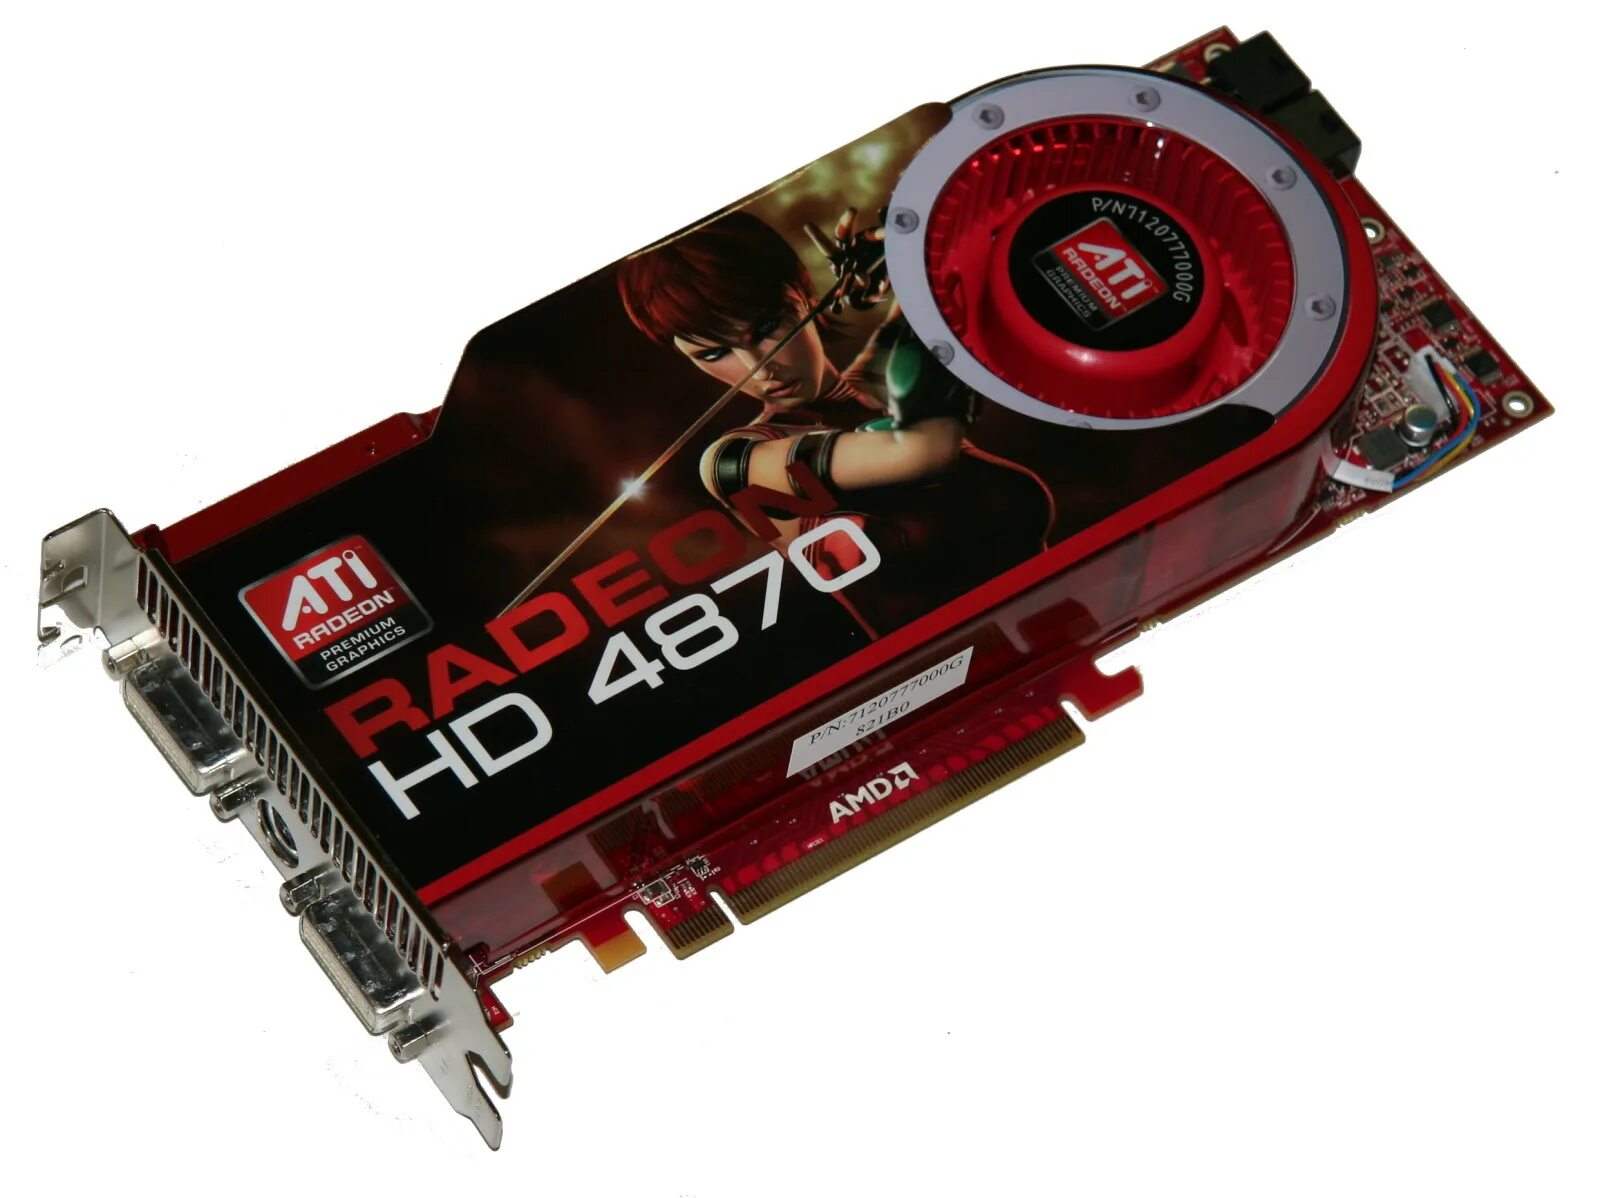 Ati radeon. ASUS Radeon HD 4800. AMD ATI Radeon HD 4800 Series. ATI Radeon HD 4800 Sapphire. Radeon 4800 HD 1gb.